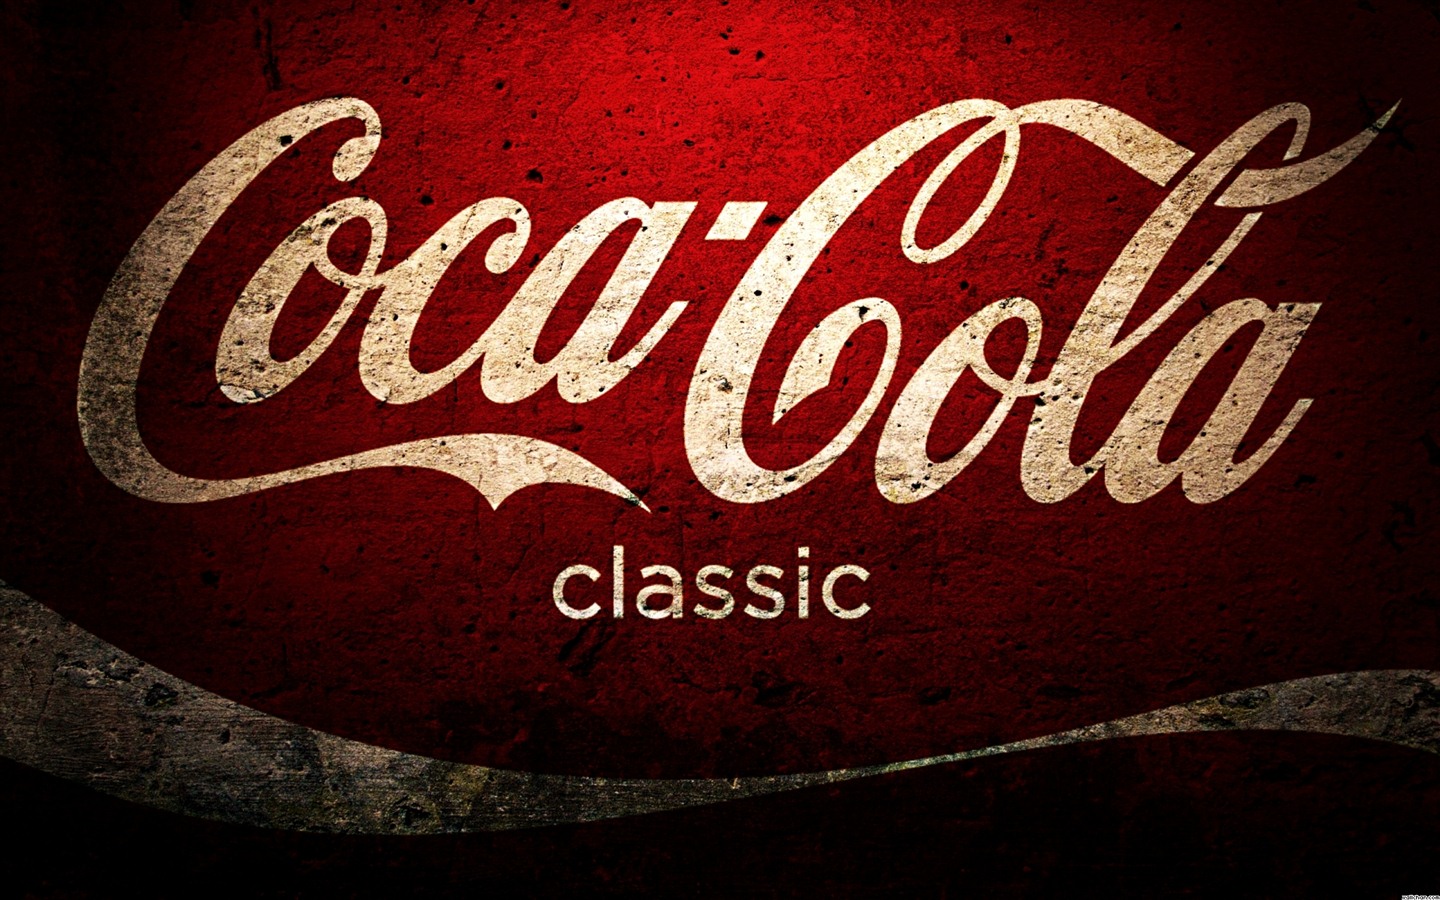 Coca-Cola schöne Ad Wallpaper #25 - 1440x900